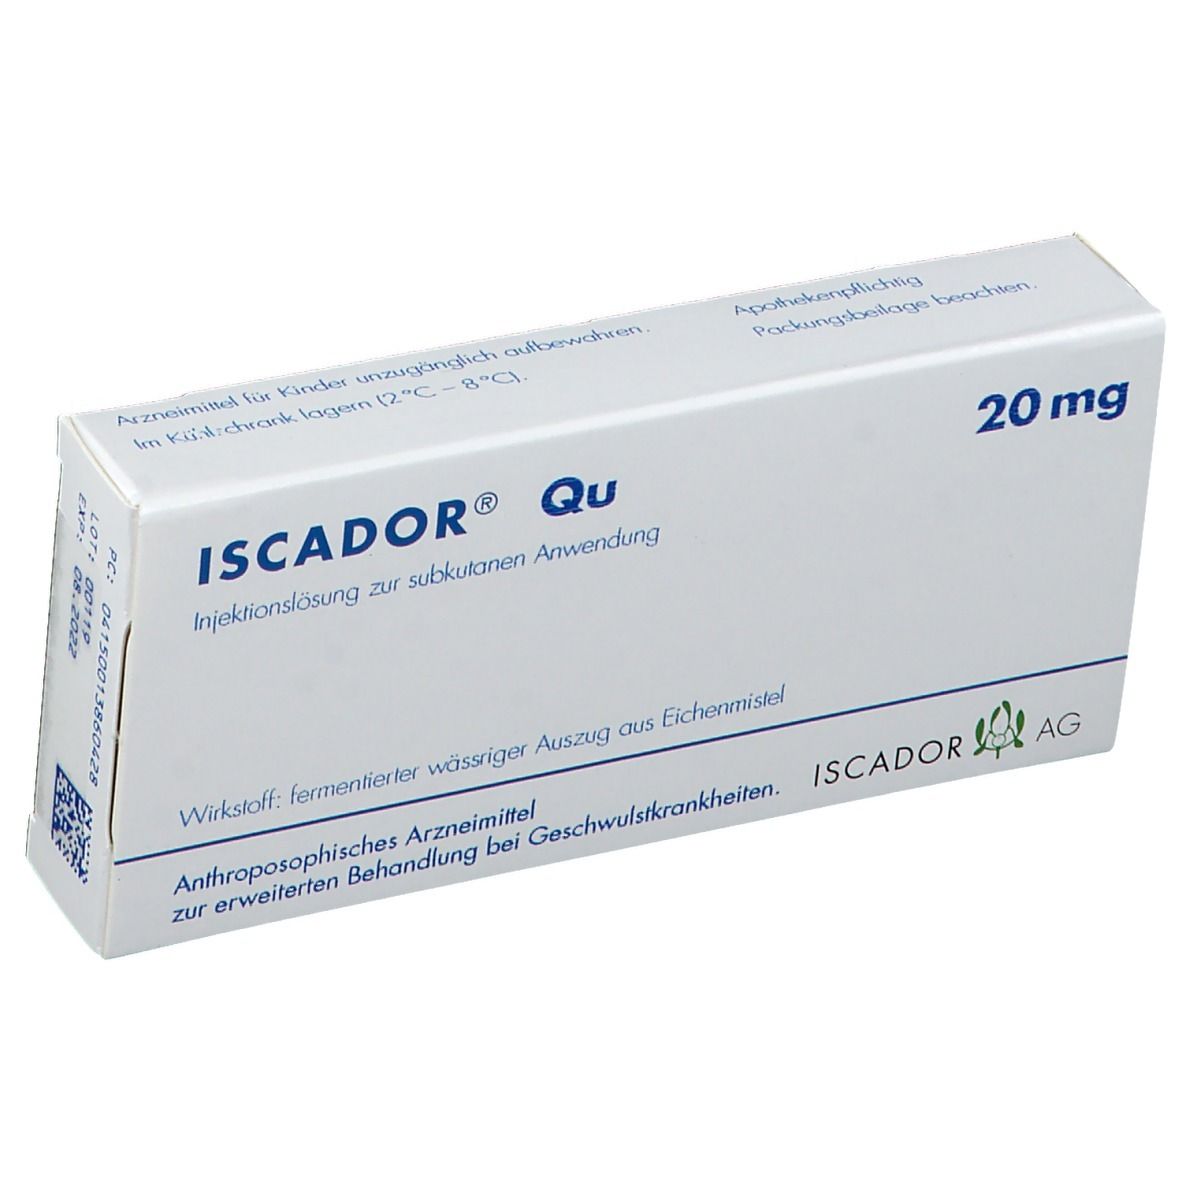 ISCADOR® Qu 20 mg